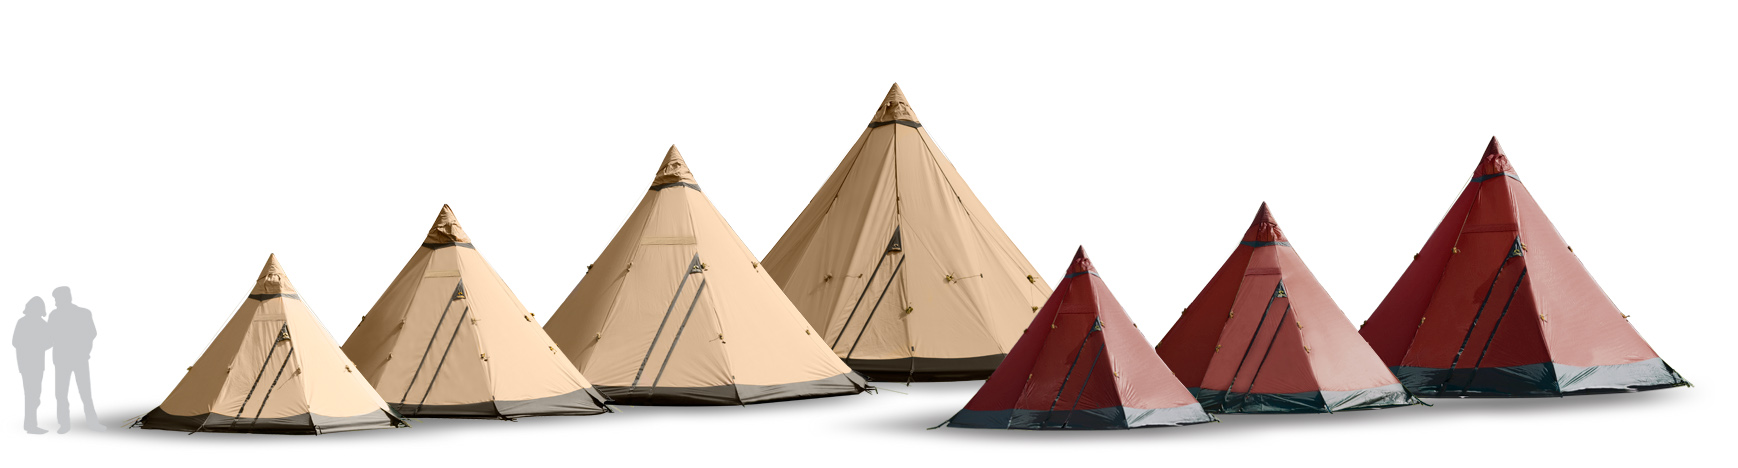 2018 COMFORT Tent Range Complete wp